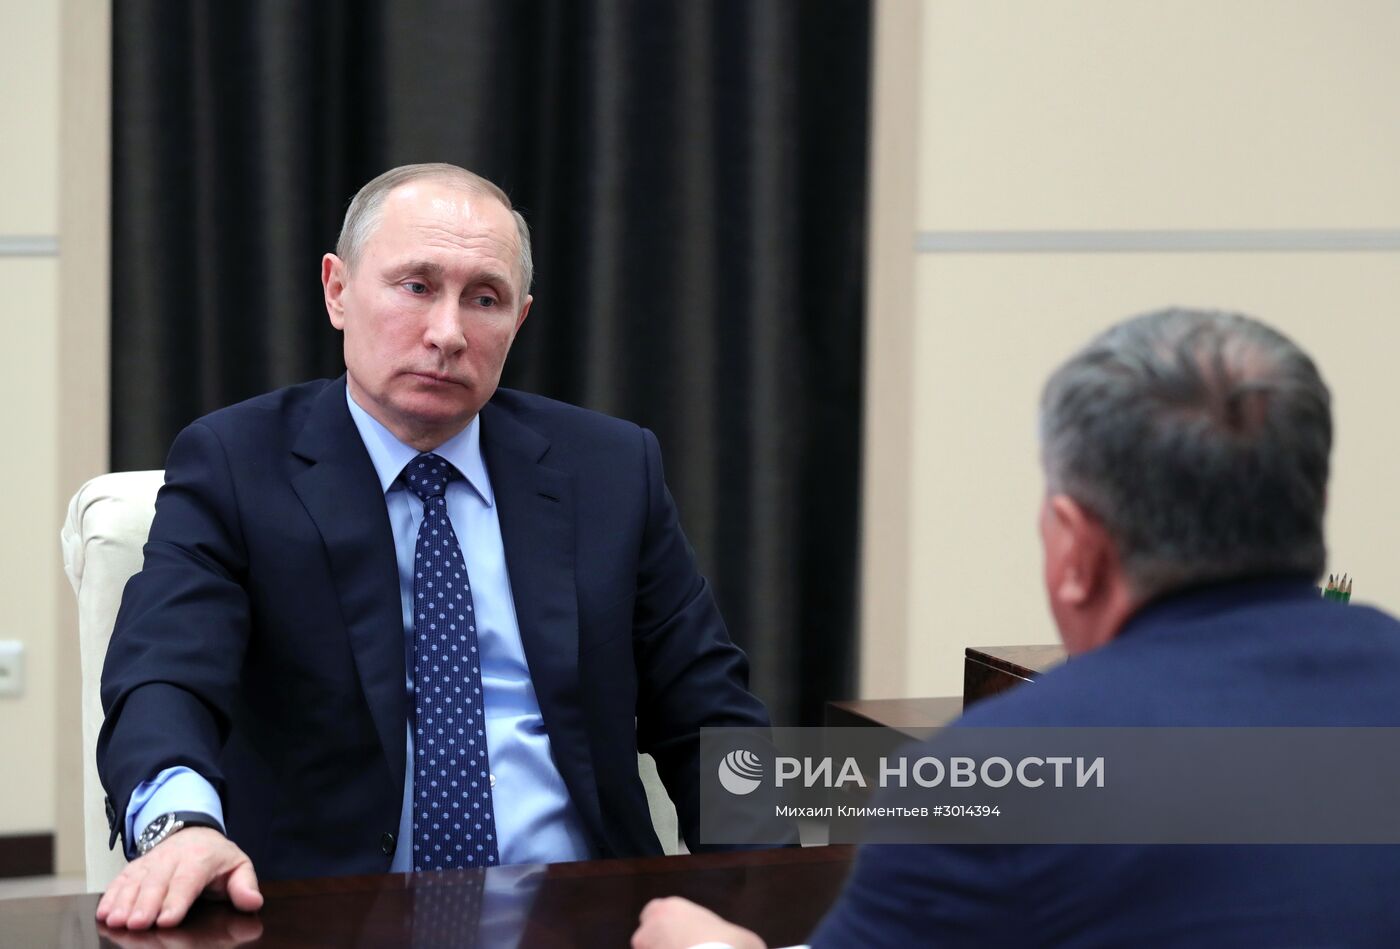 Президент РФ В. Путин встретился с главой НК "Роснефть" И. Сечиным